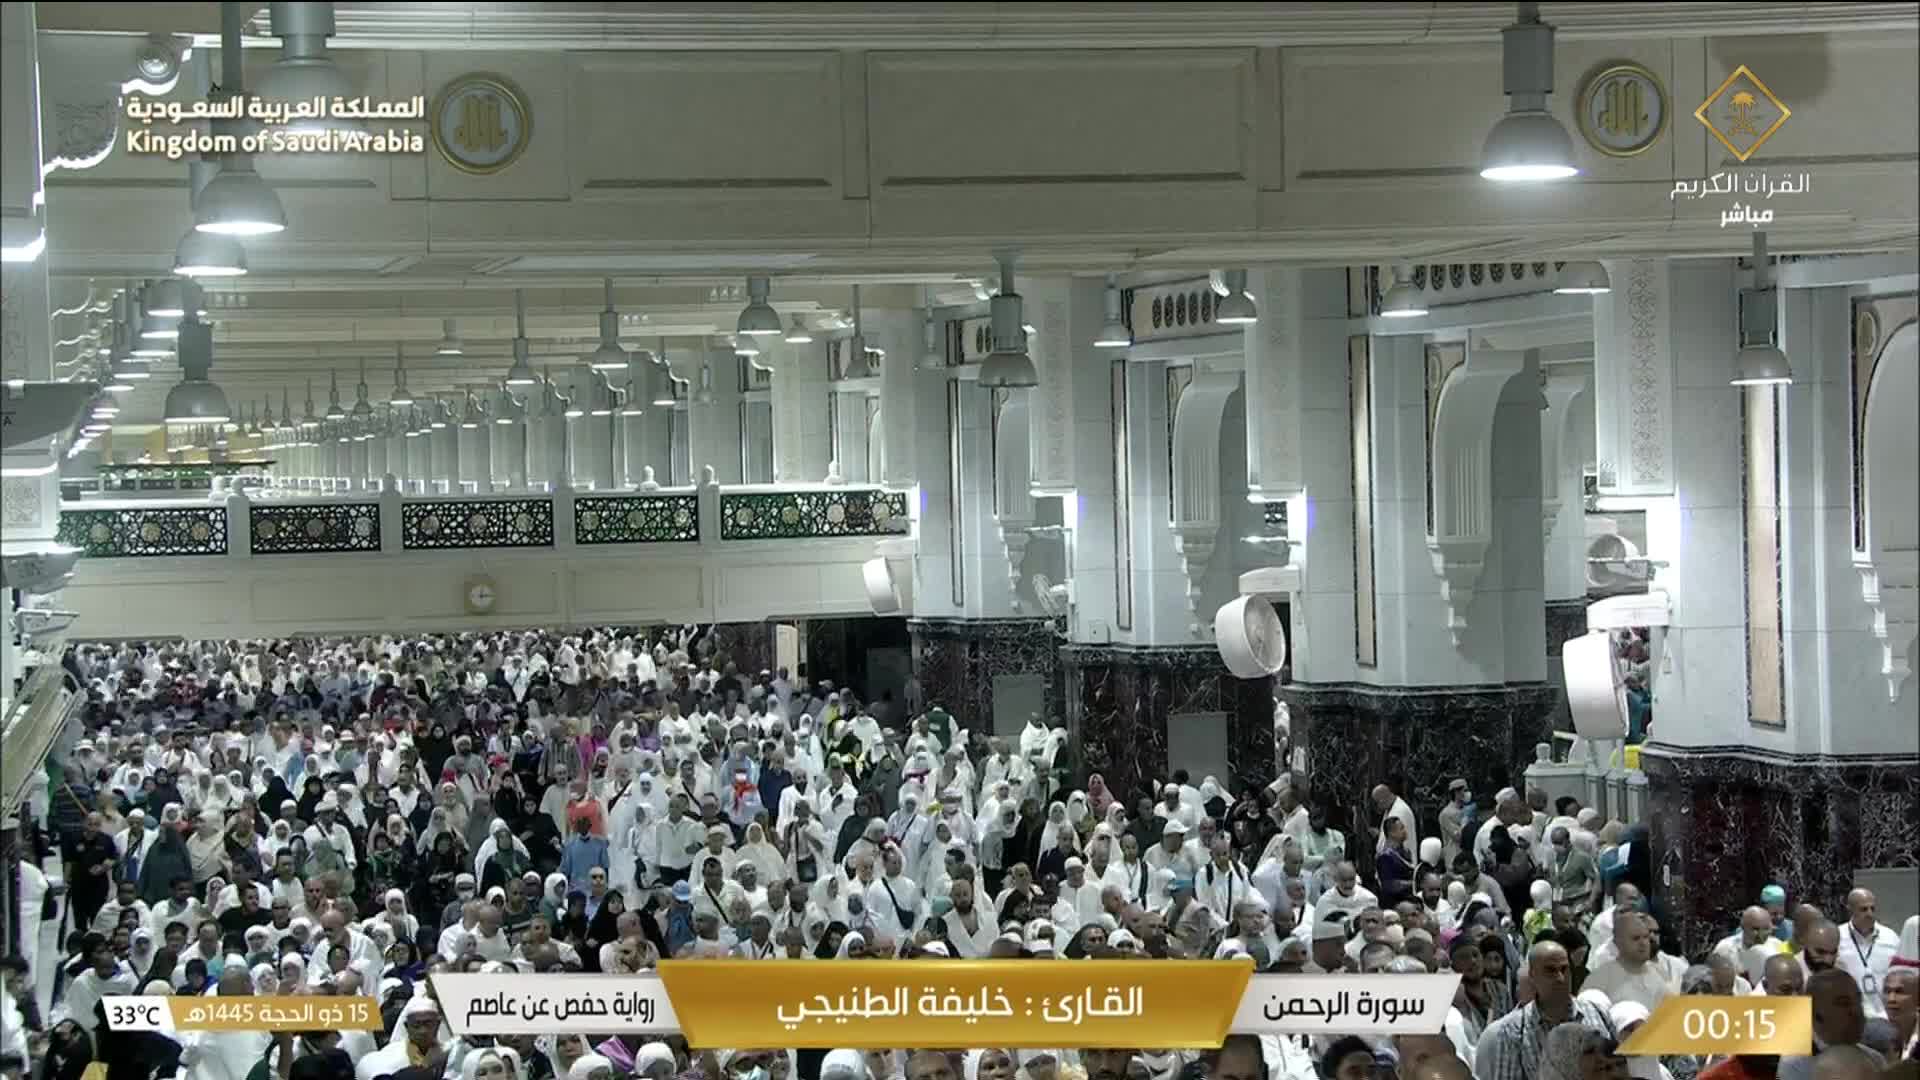 La Mecque Di. 00:36